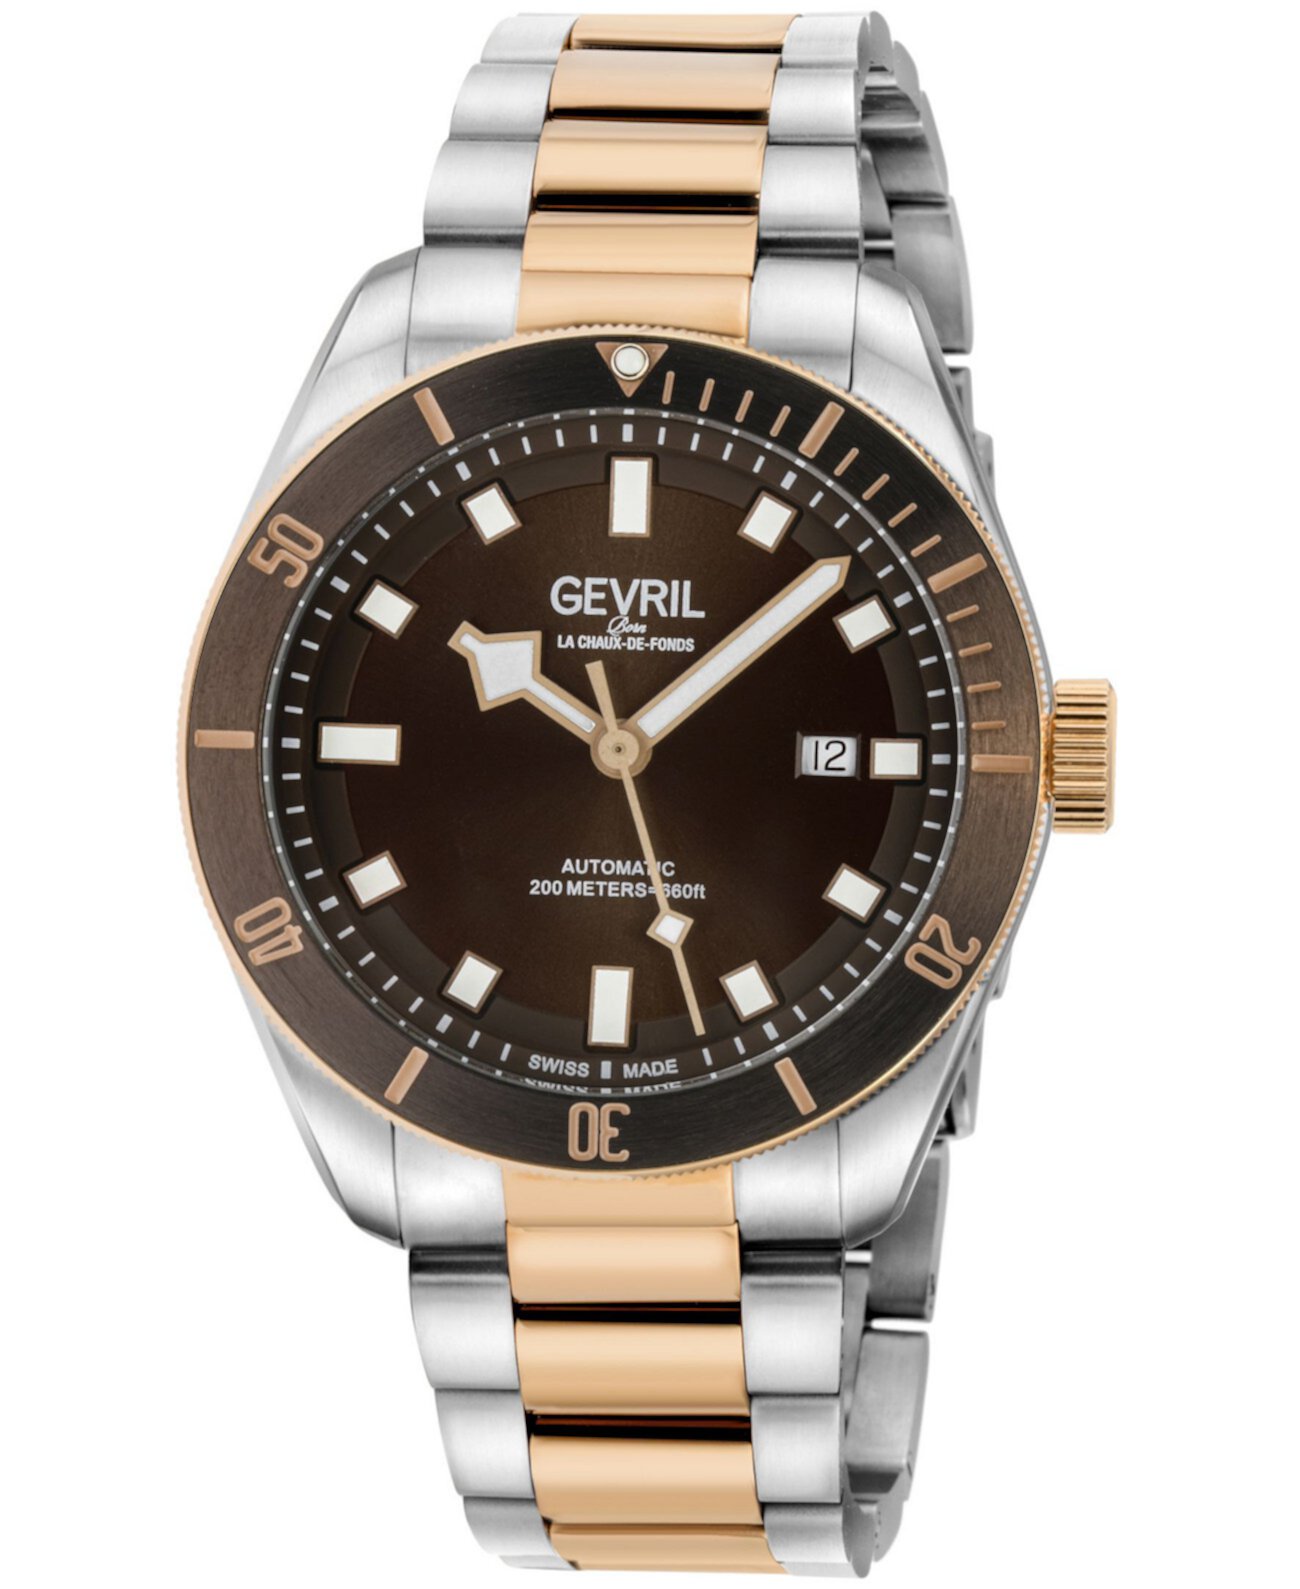 Мужские часы Yorkville Swiss Automatic двухцветные с браслетом из нержавеющей стали 43 мм Gevril